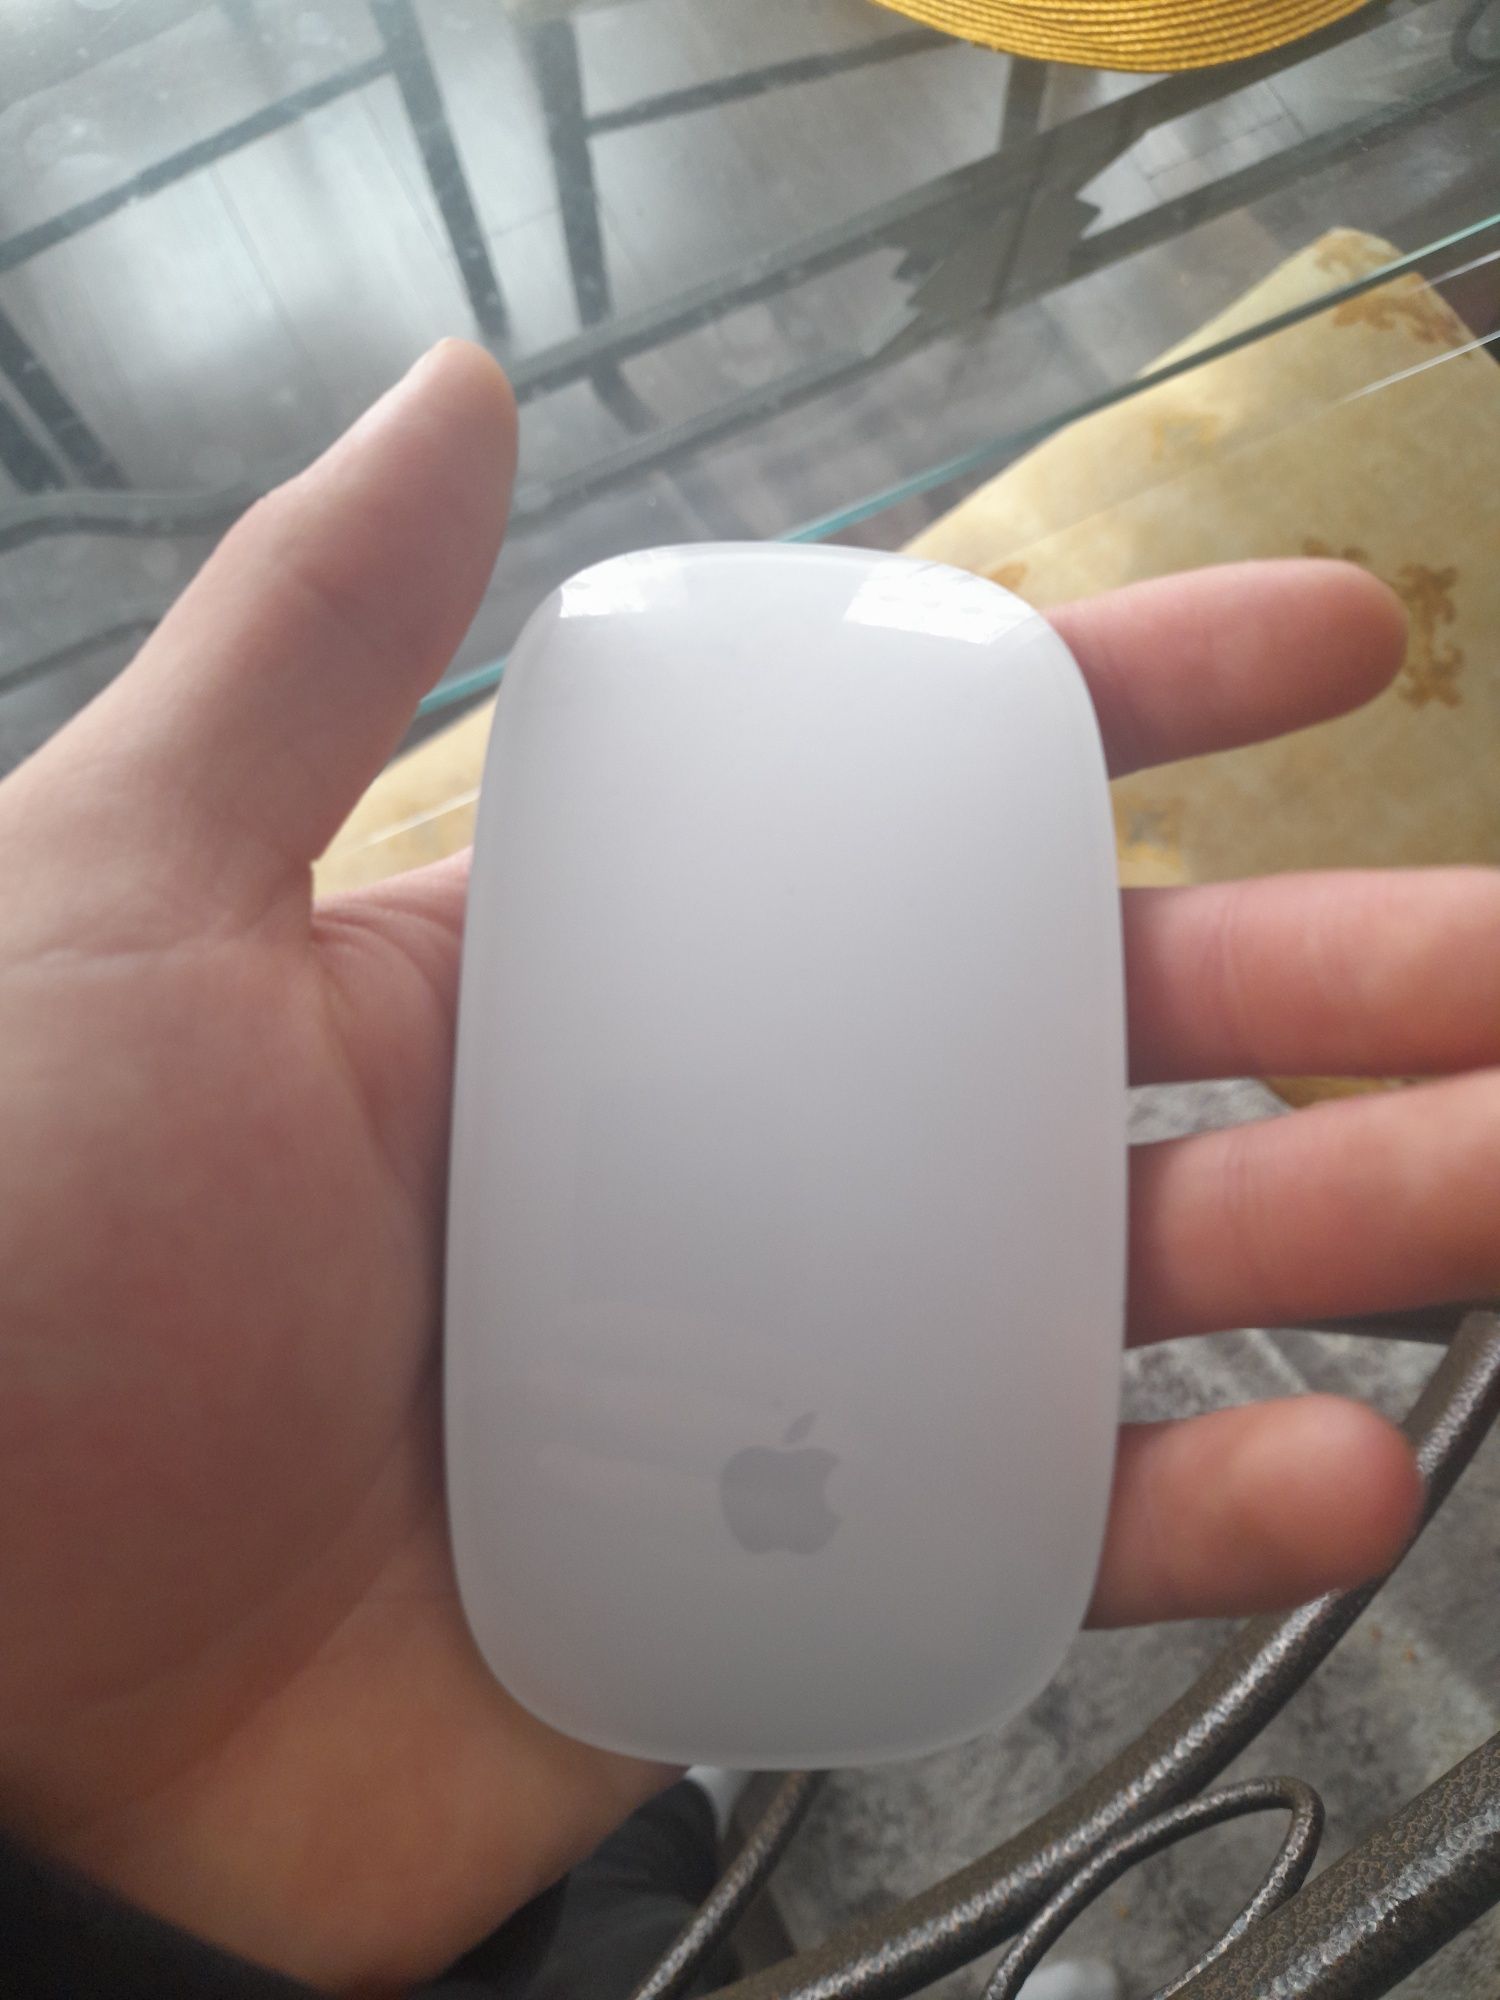 Apple Mouse Magic